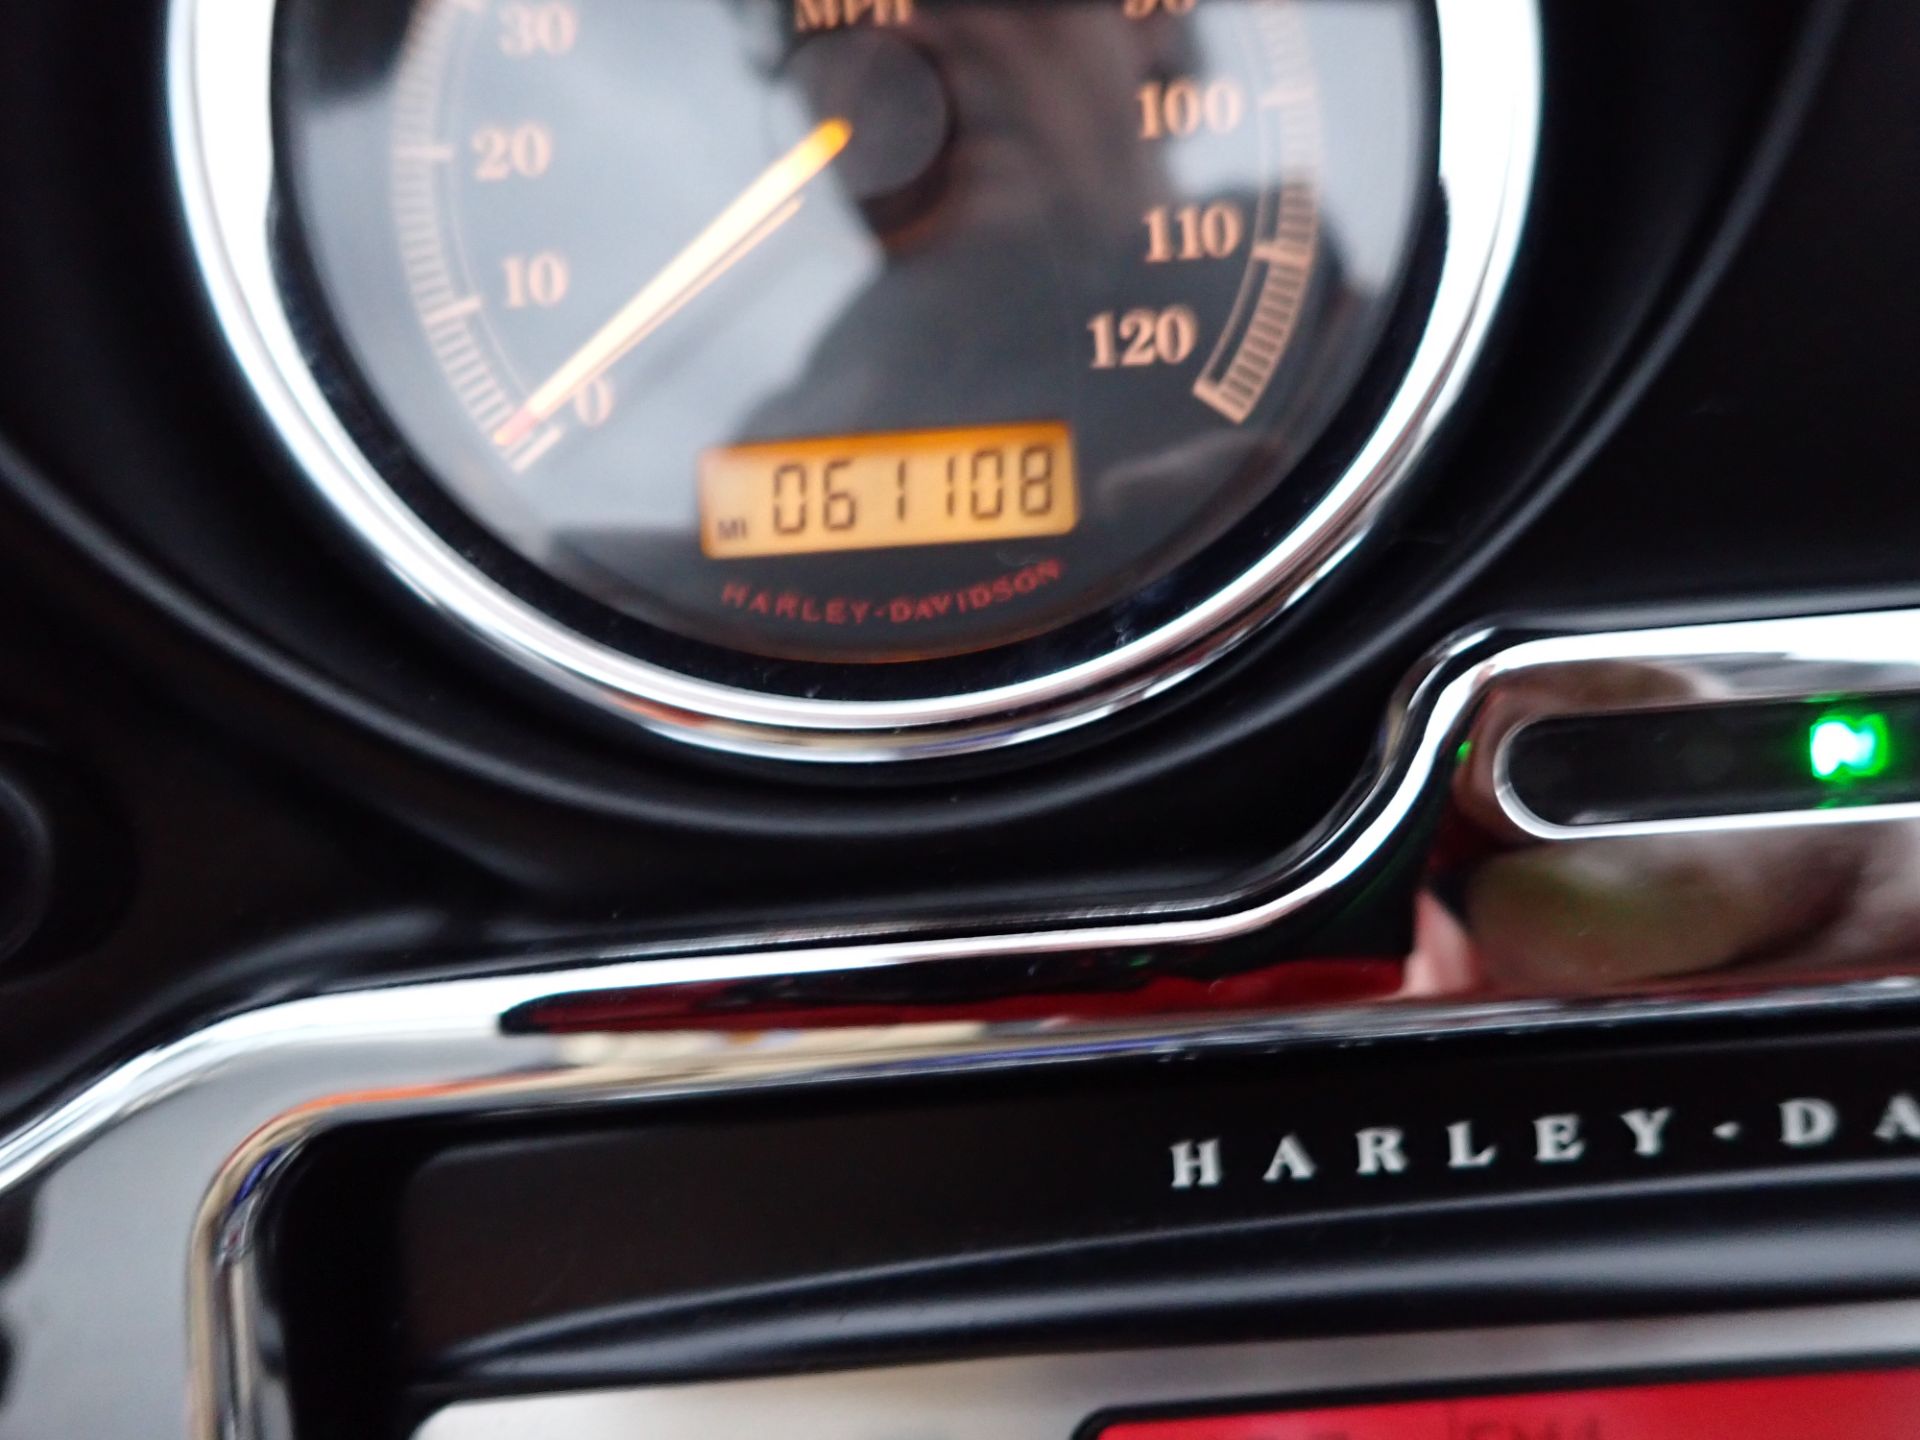 2007 Harley-Davidson Ultra Classic® Electra Glide® in Massillon, Ohio - Photo 15